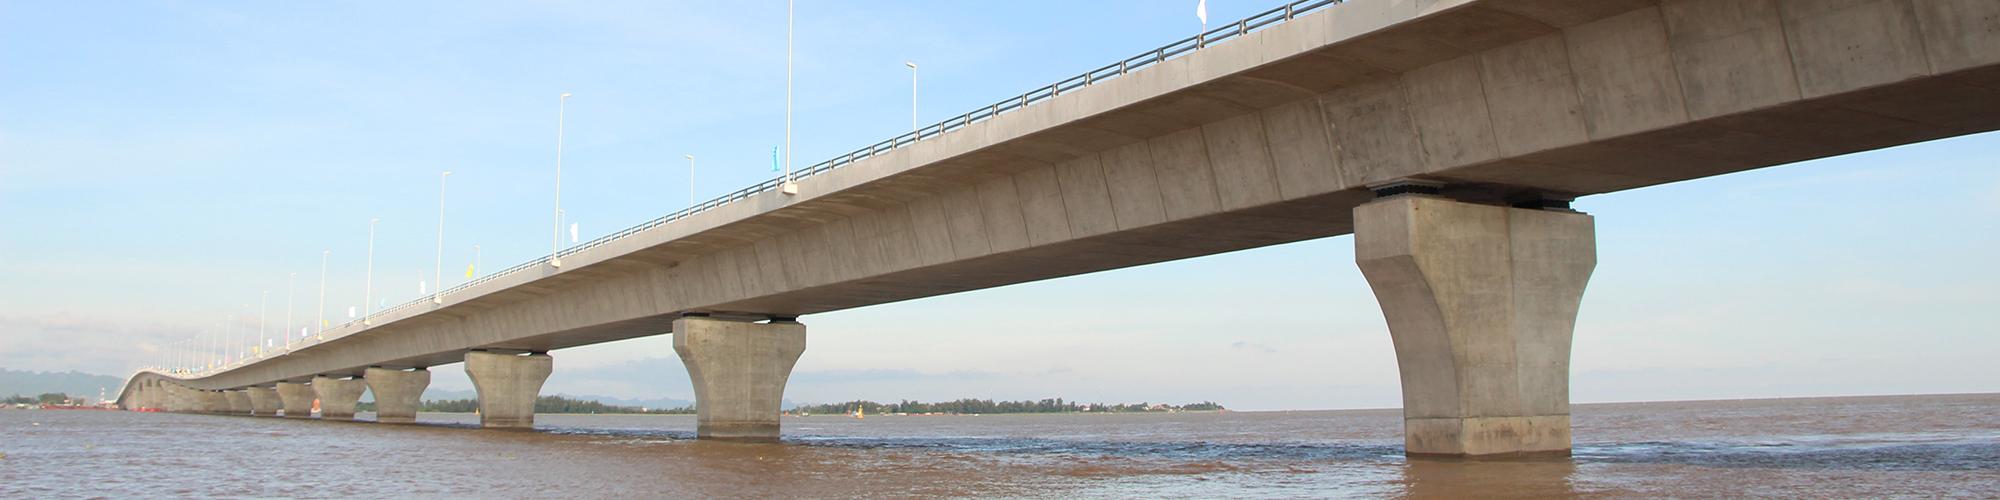 海を渡った高機能PC鋼材、実現した長大海上橋〜ベトナム・ラックフェン橋〜